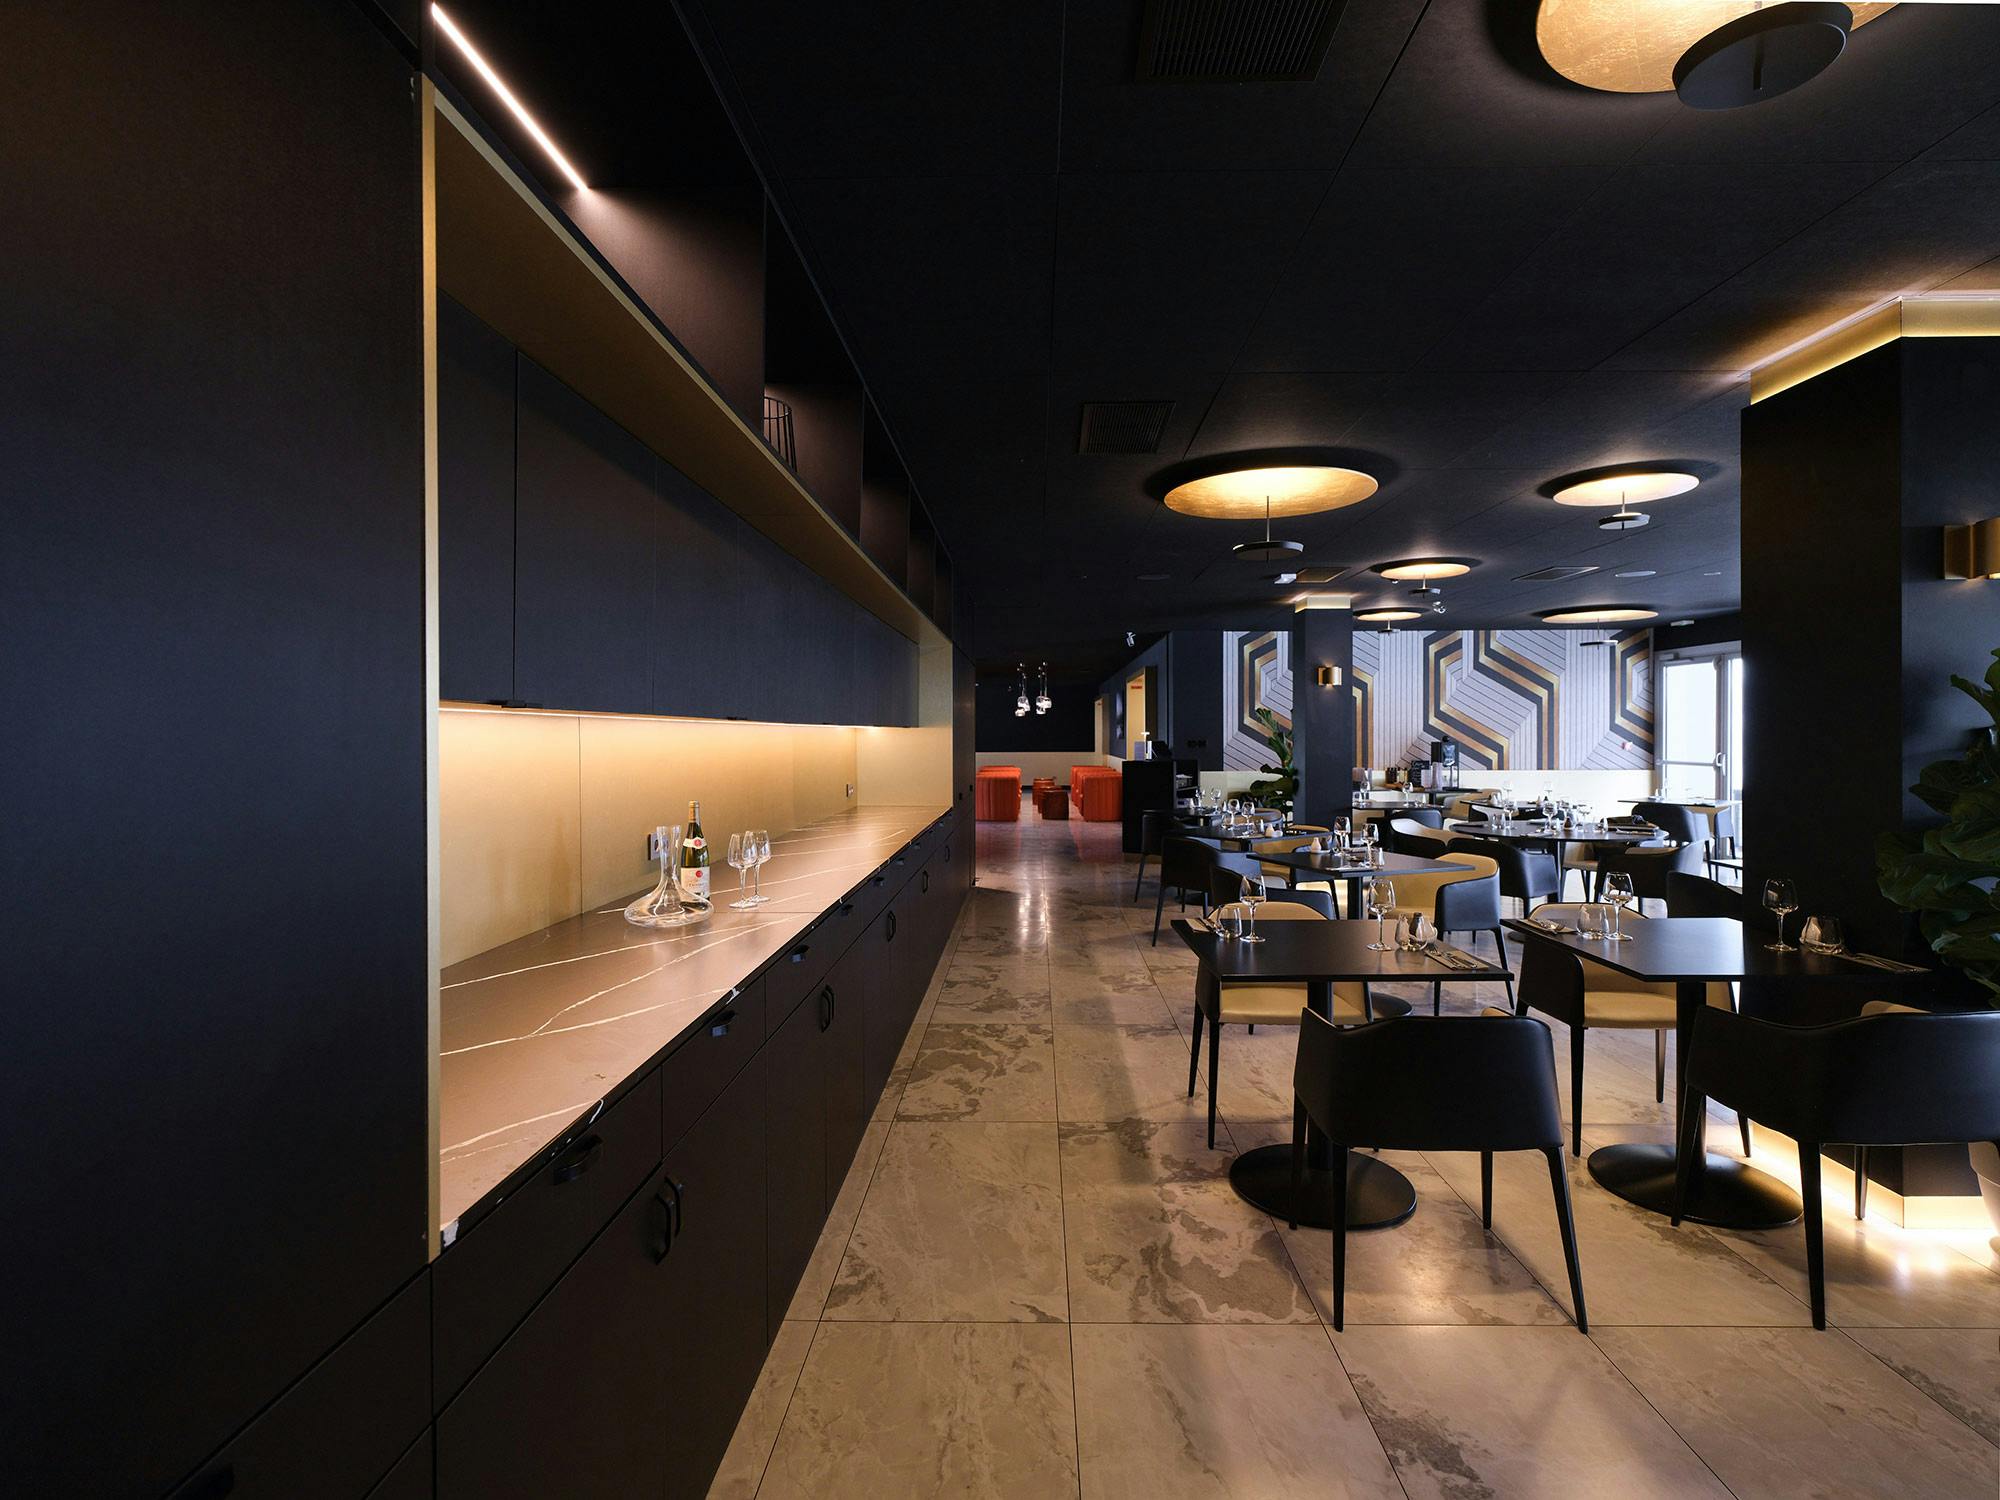 Numéro d'image 40 de la section actuelle de Ce restaurant parisien réputé, dont les tables, les comptoirs et les murs sont recouverts de surfaces Cosentino, est un exemple de modernité et d’élégance de Cosentino France